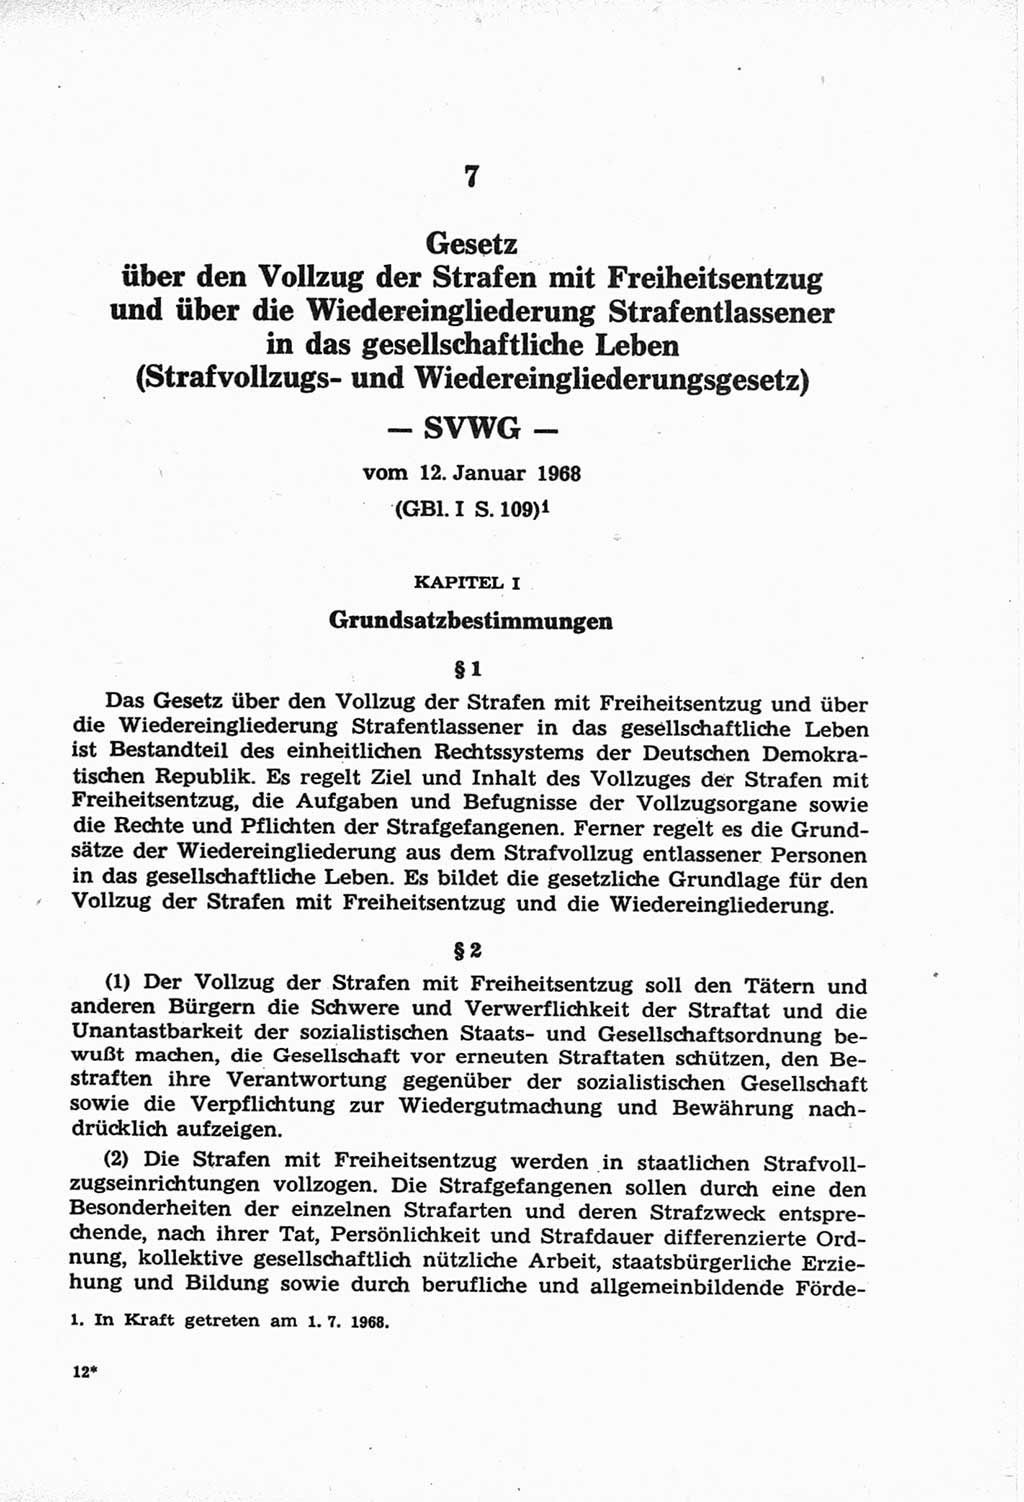 Strafprozeßordnung (StPO) der Deutschen Demokratischen Republik (DDR) und angrenzende Gesetze und Bestimmungen 1968, Seite 179 (StPO Ges. Bstgn. DDR 1968, S. 179)